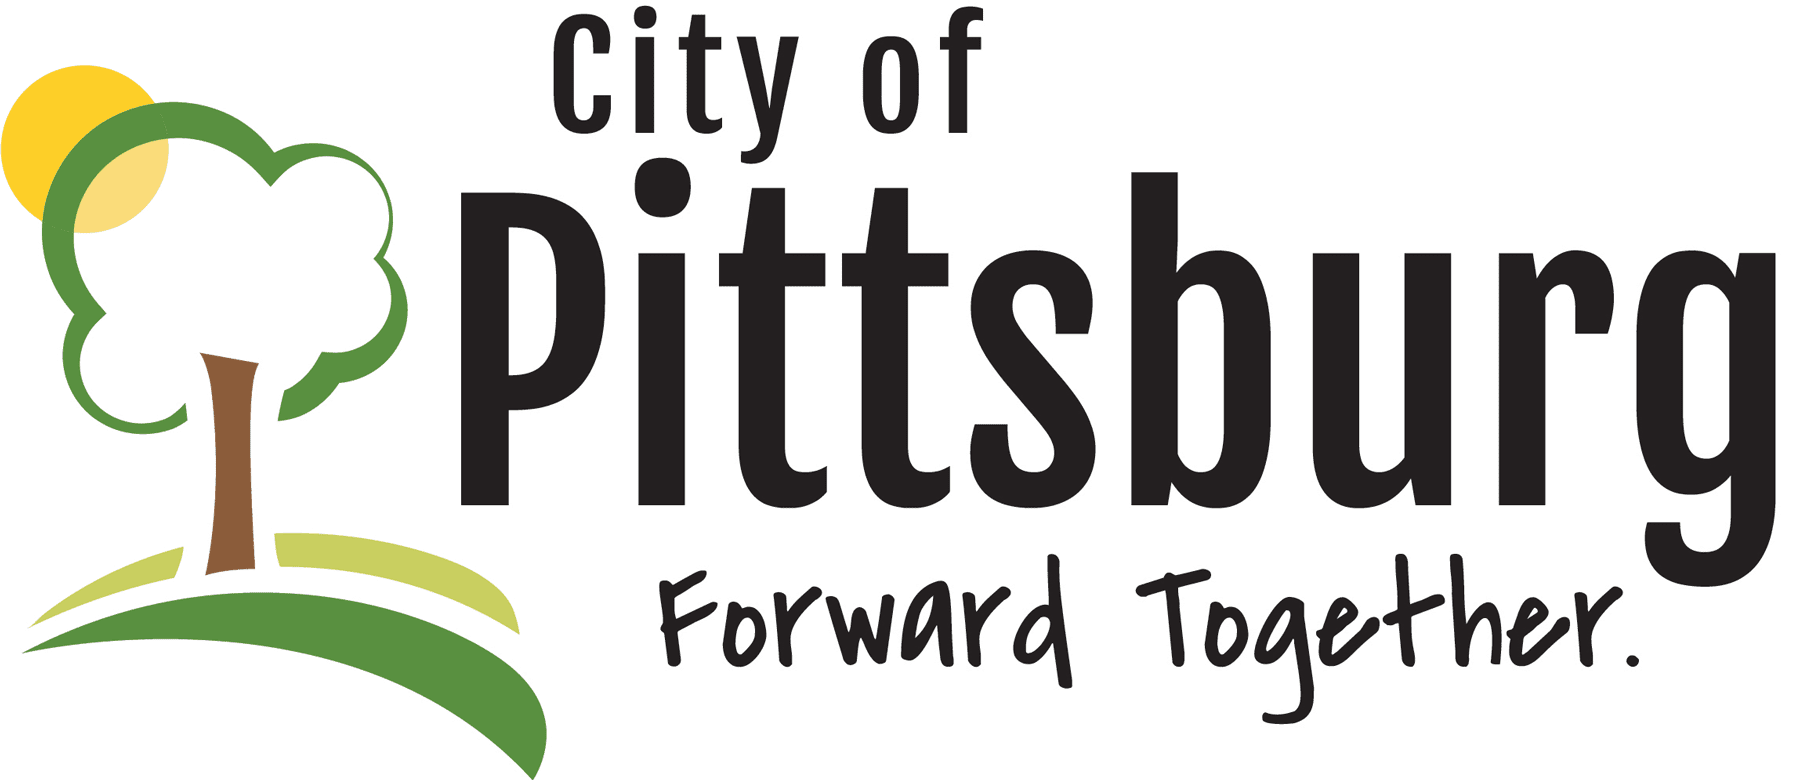 City of Pittsburg